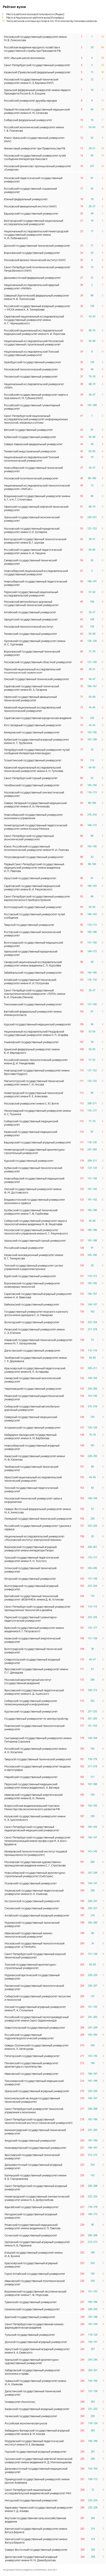 Рейтинг вузов от Яндекс